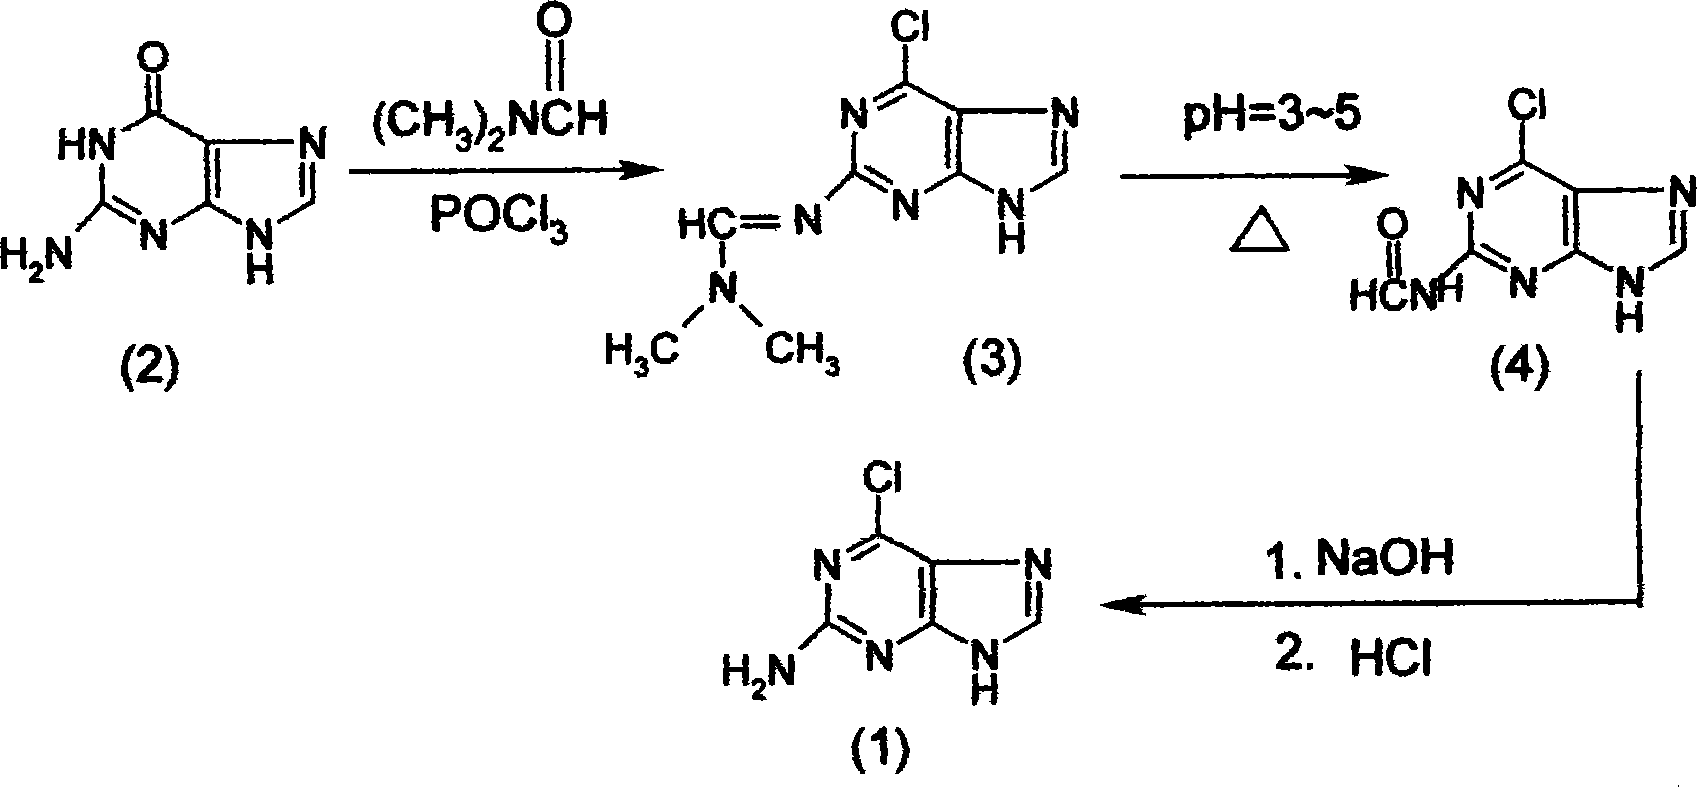 Method for synthesizing 2-amido-6-chloropurine